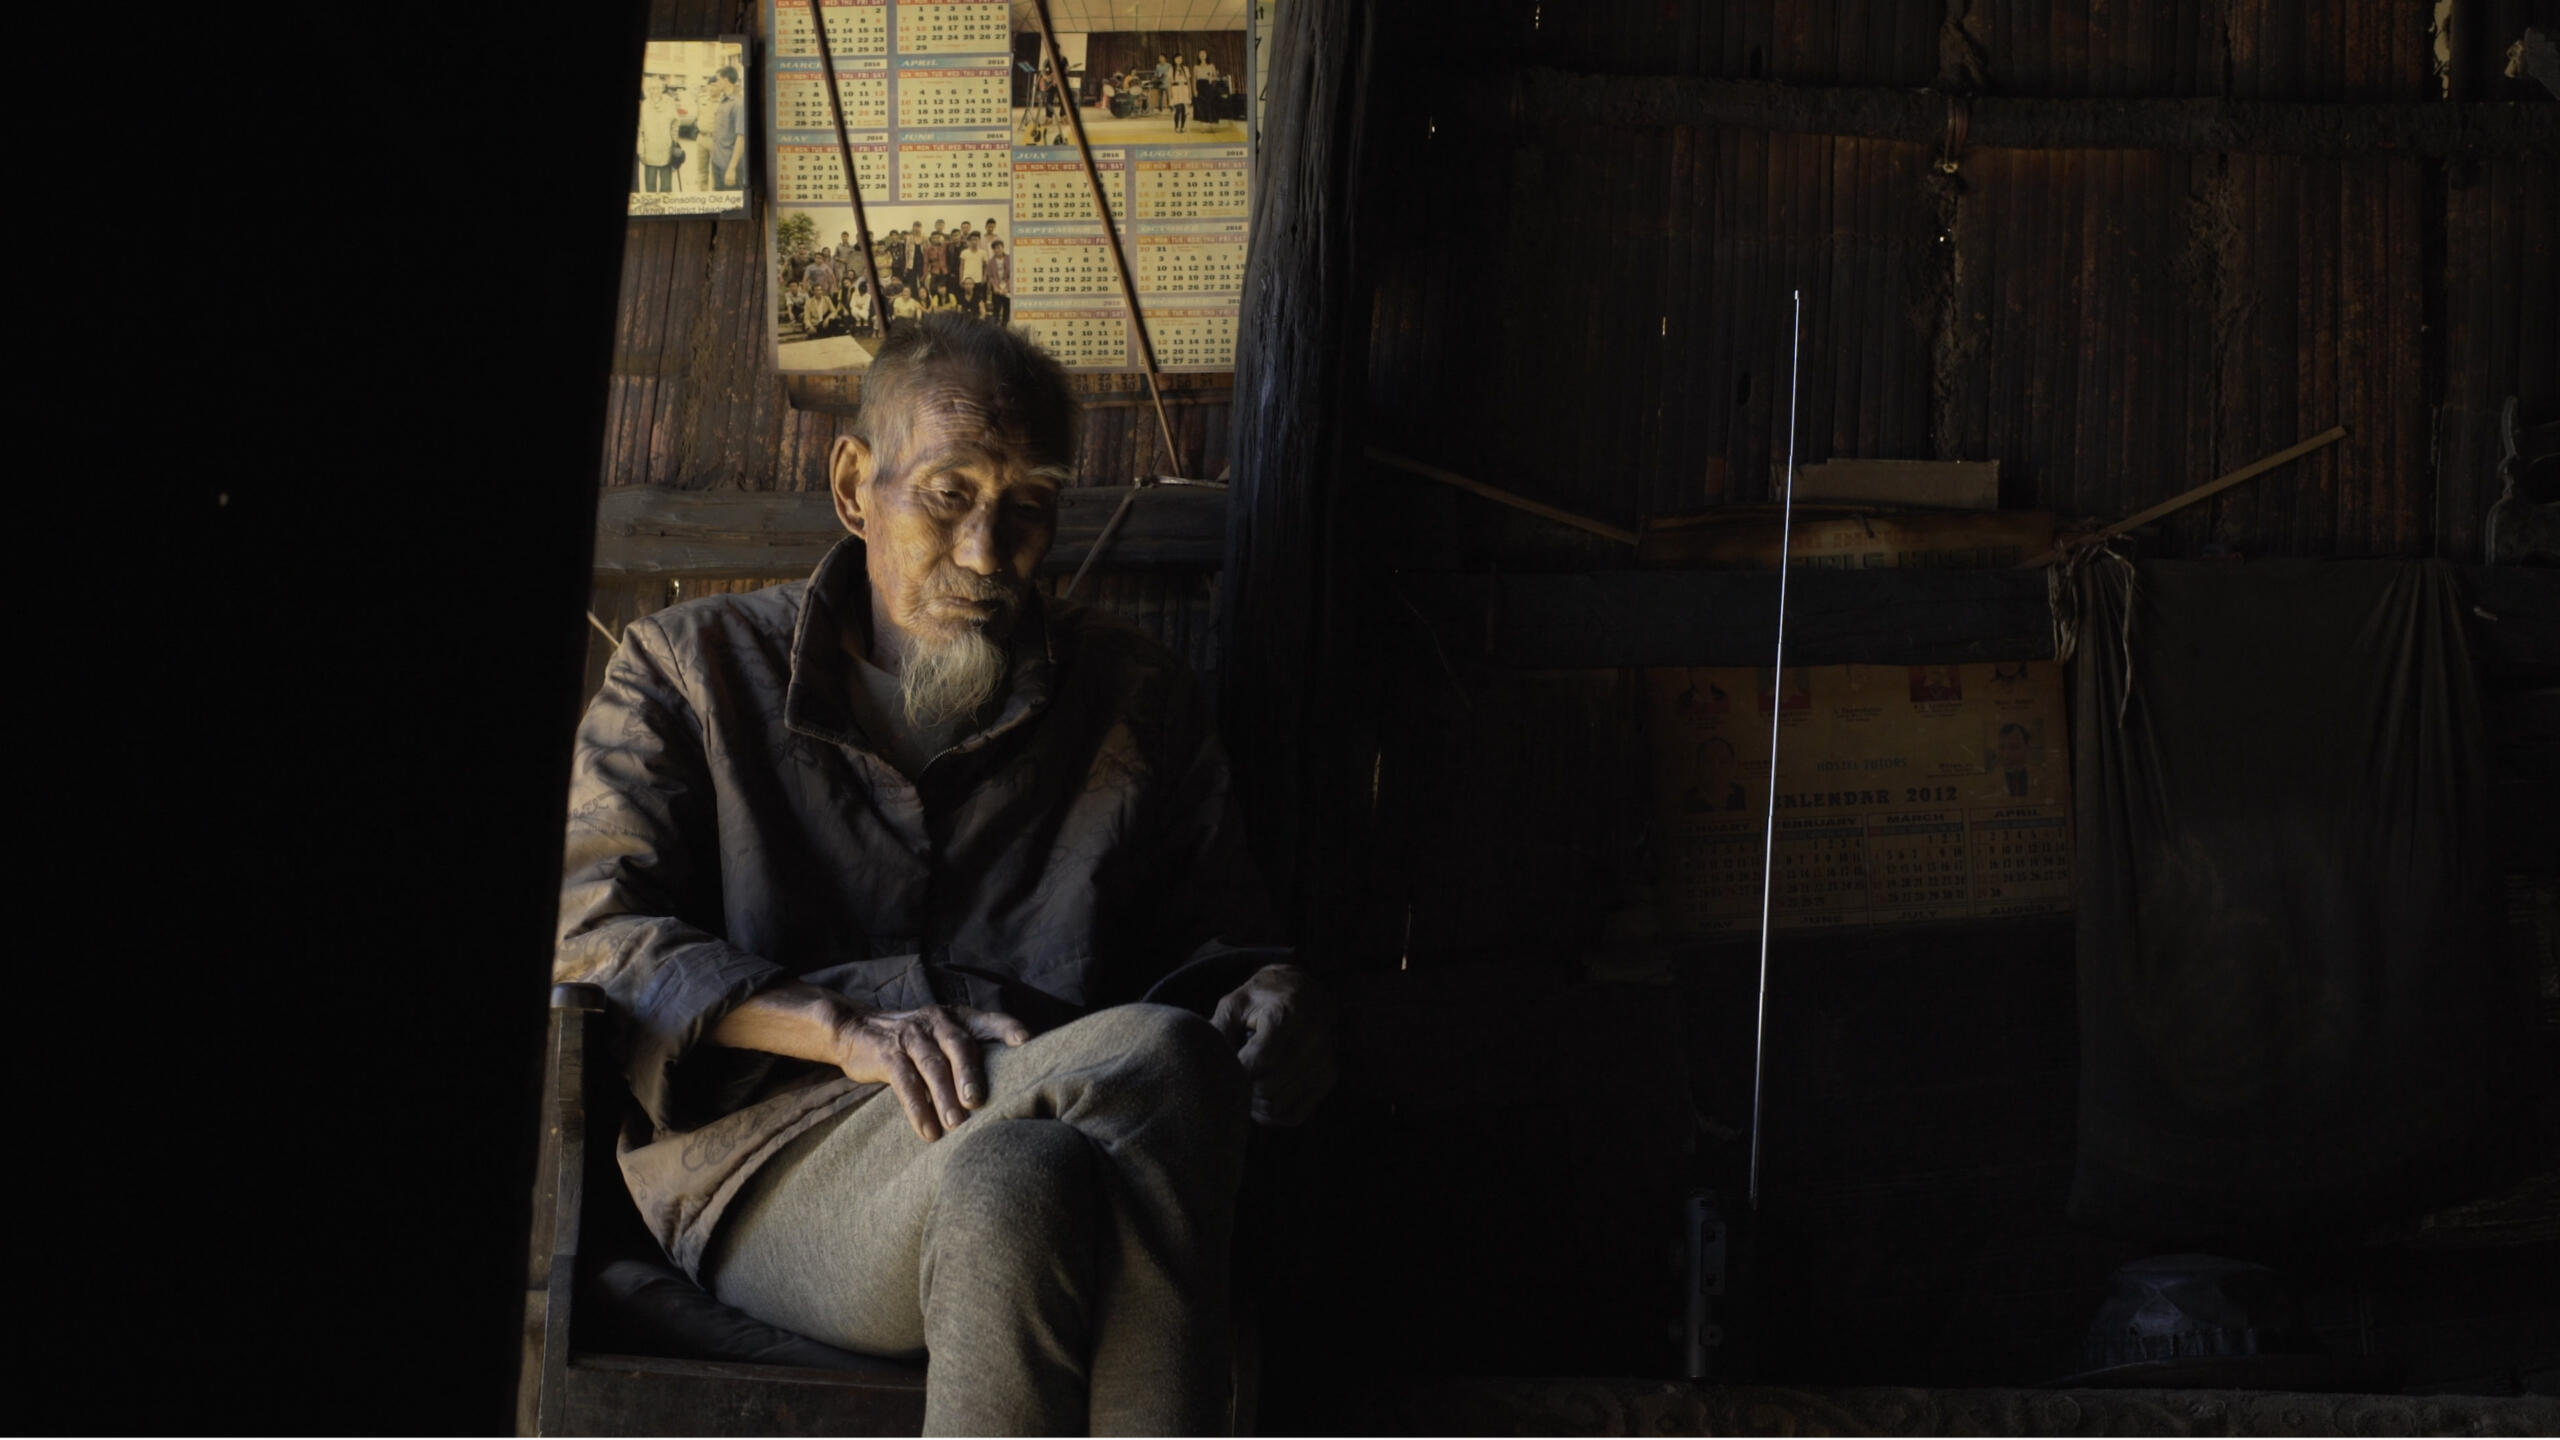 Ein alter Mann sitzt in eine Decke gehüllt und schmutzig in einer dunklen Kammer.